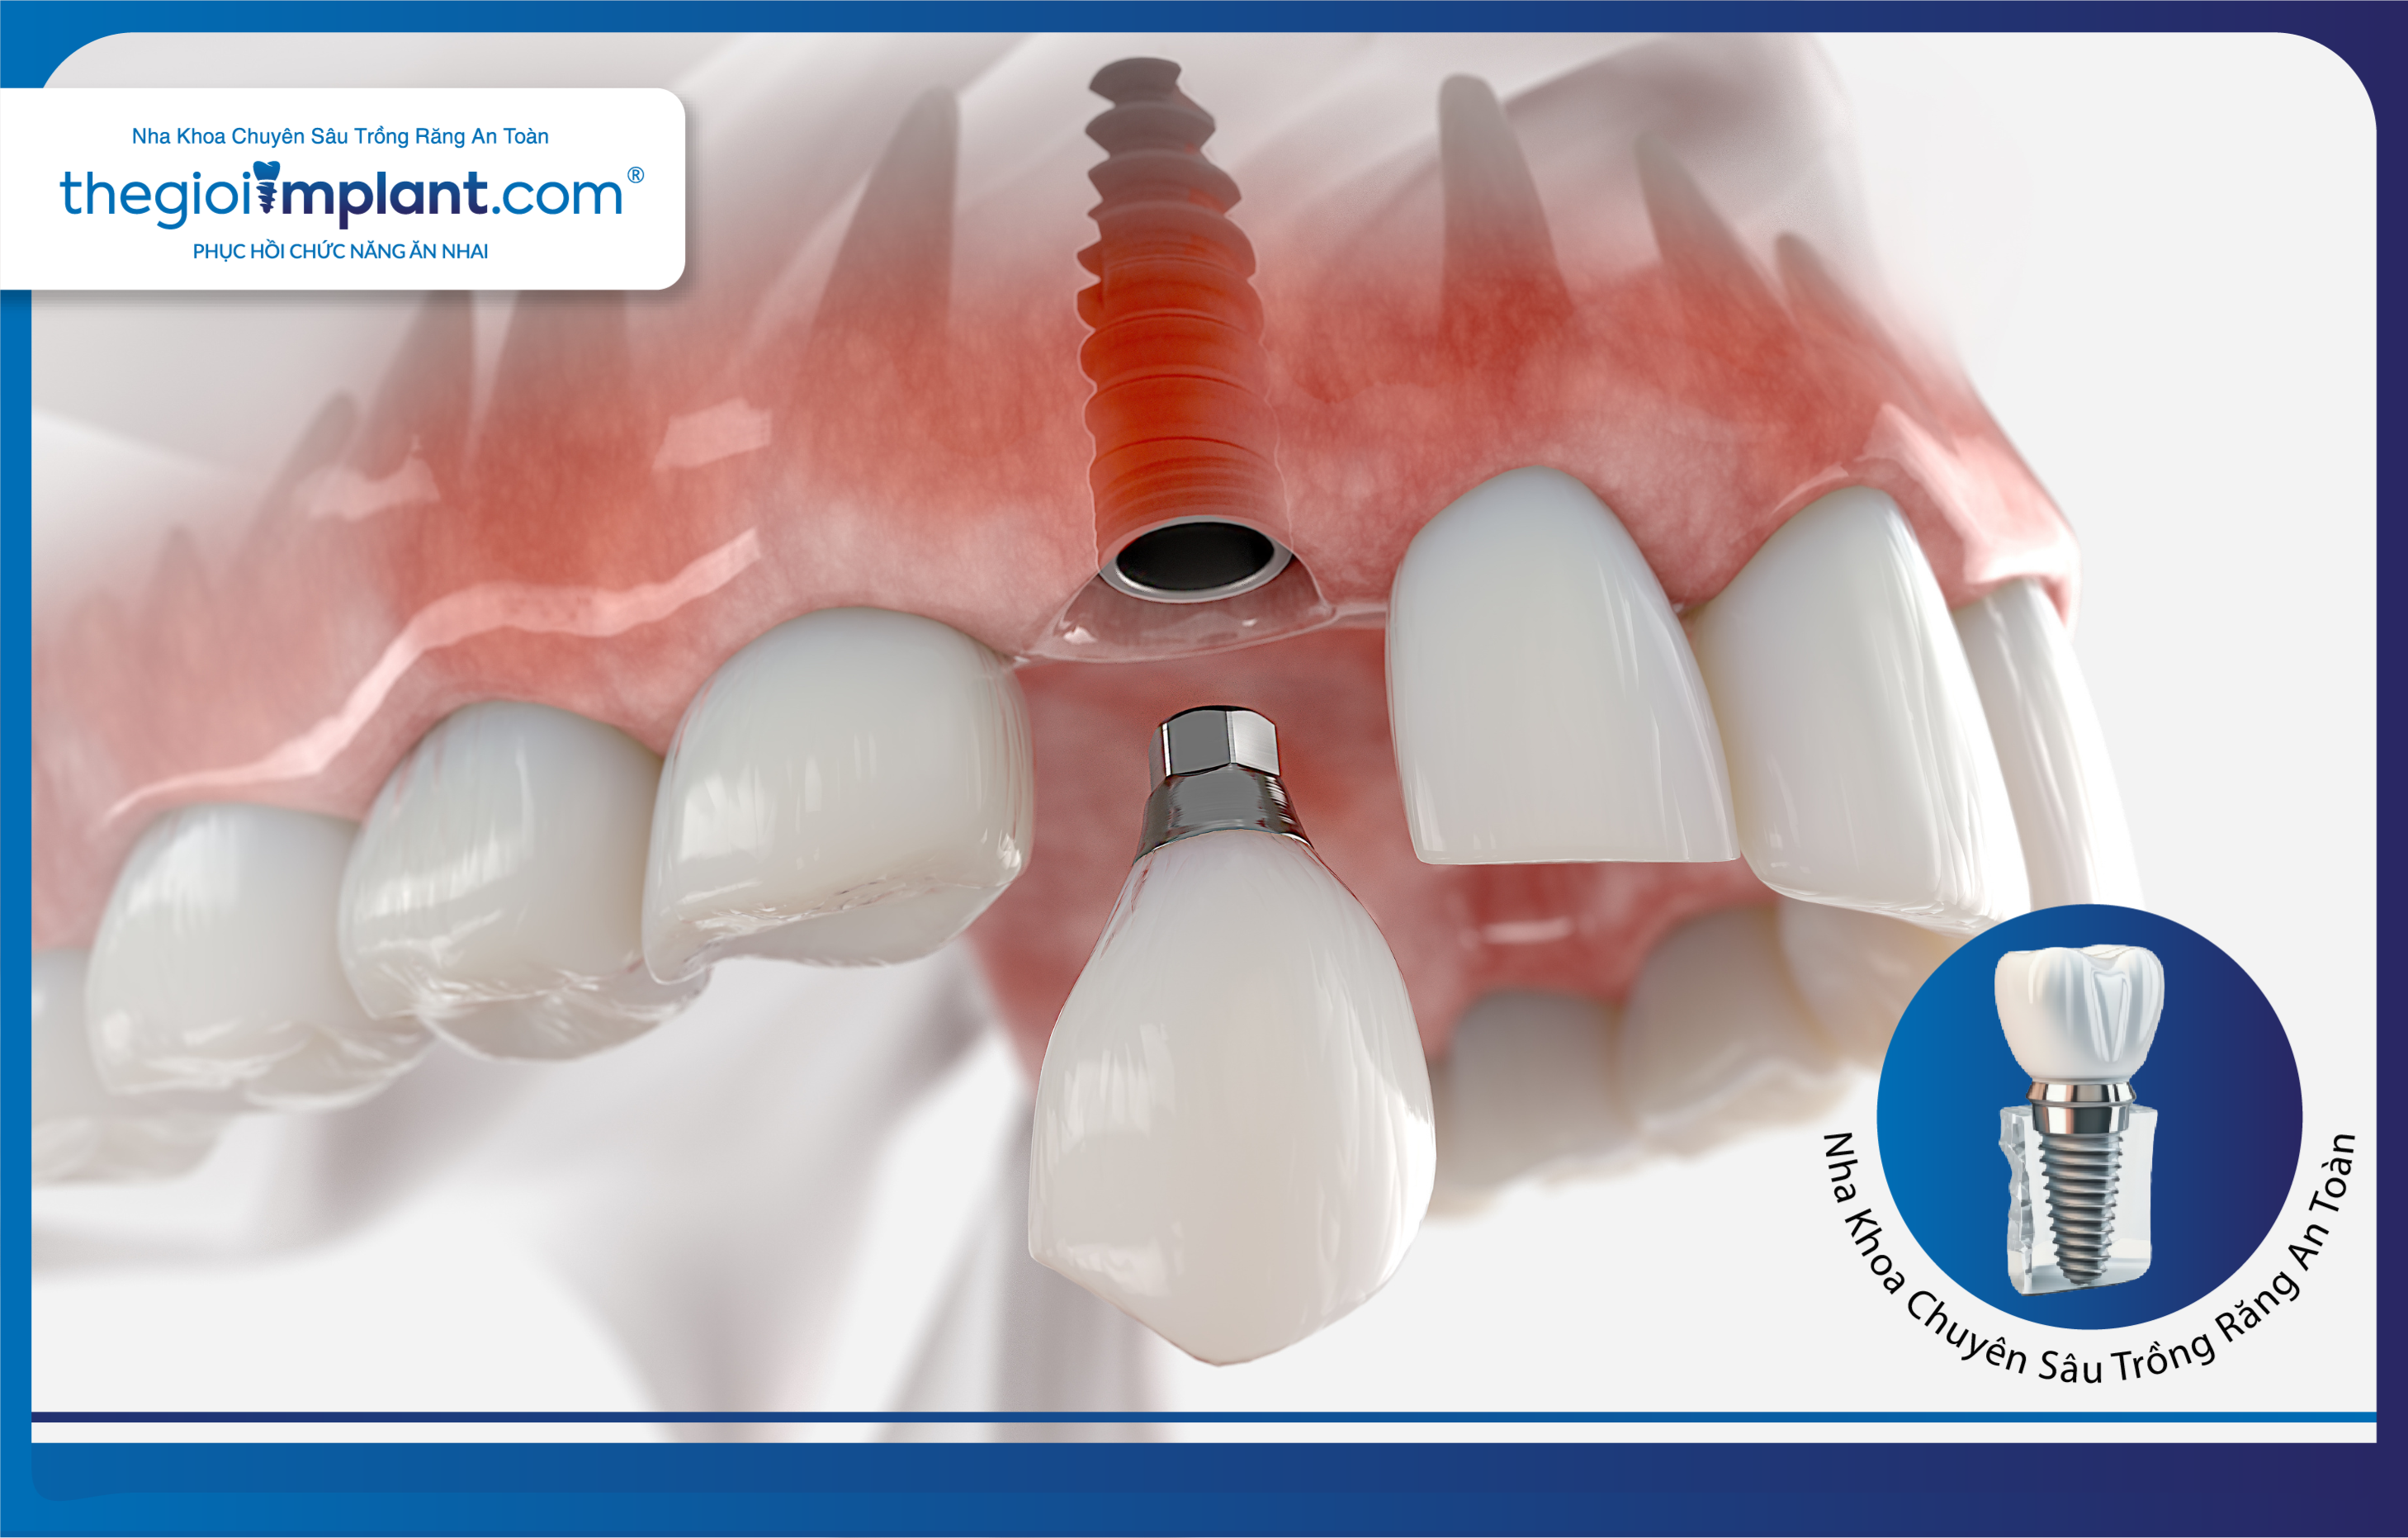 Trồng răng Implant - Giải pháp phục hồi răng mất hiệu quả